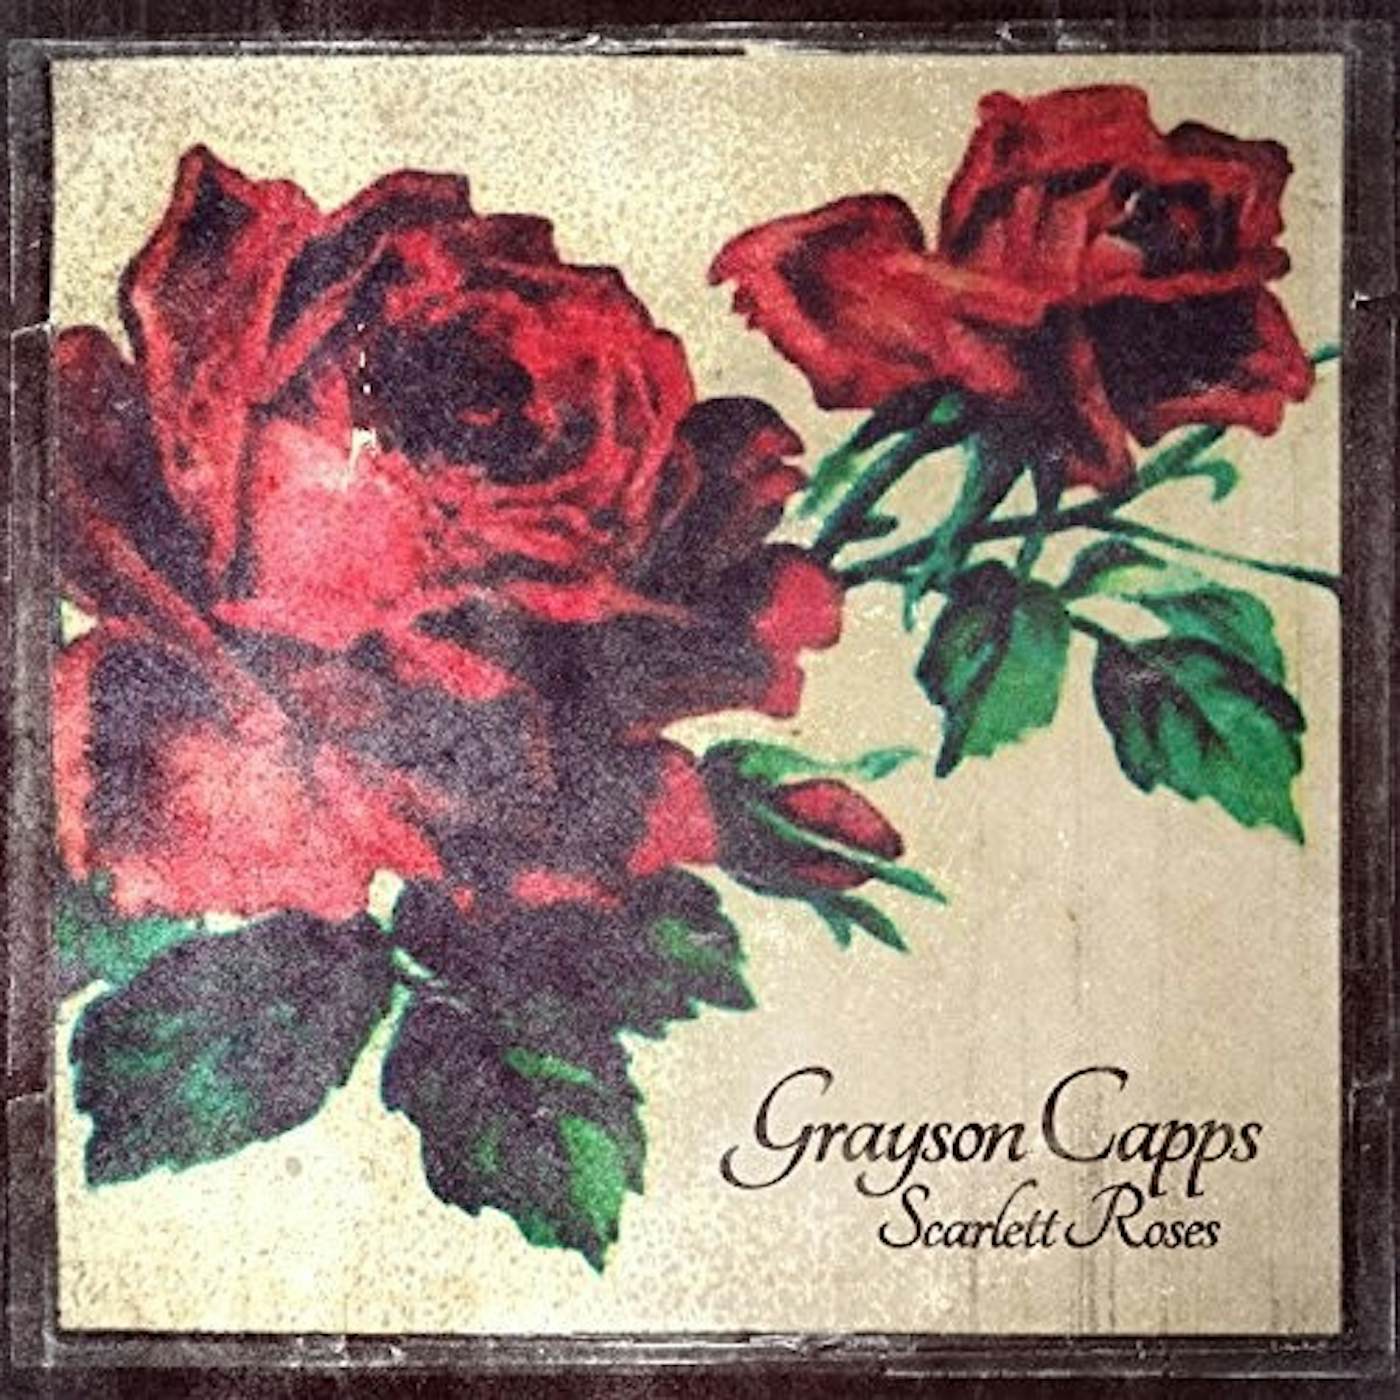 Grayson Capps Scarlett Roses CD